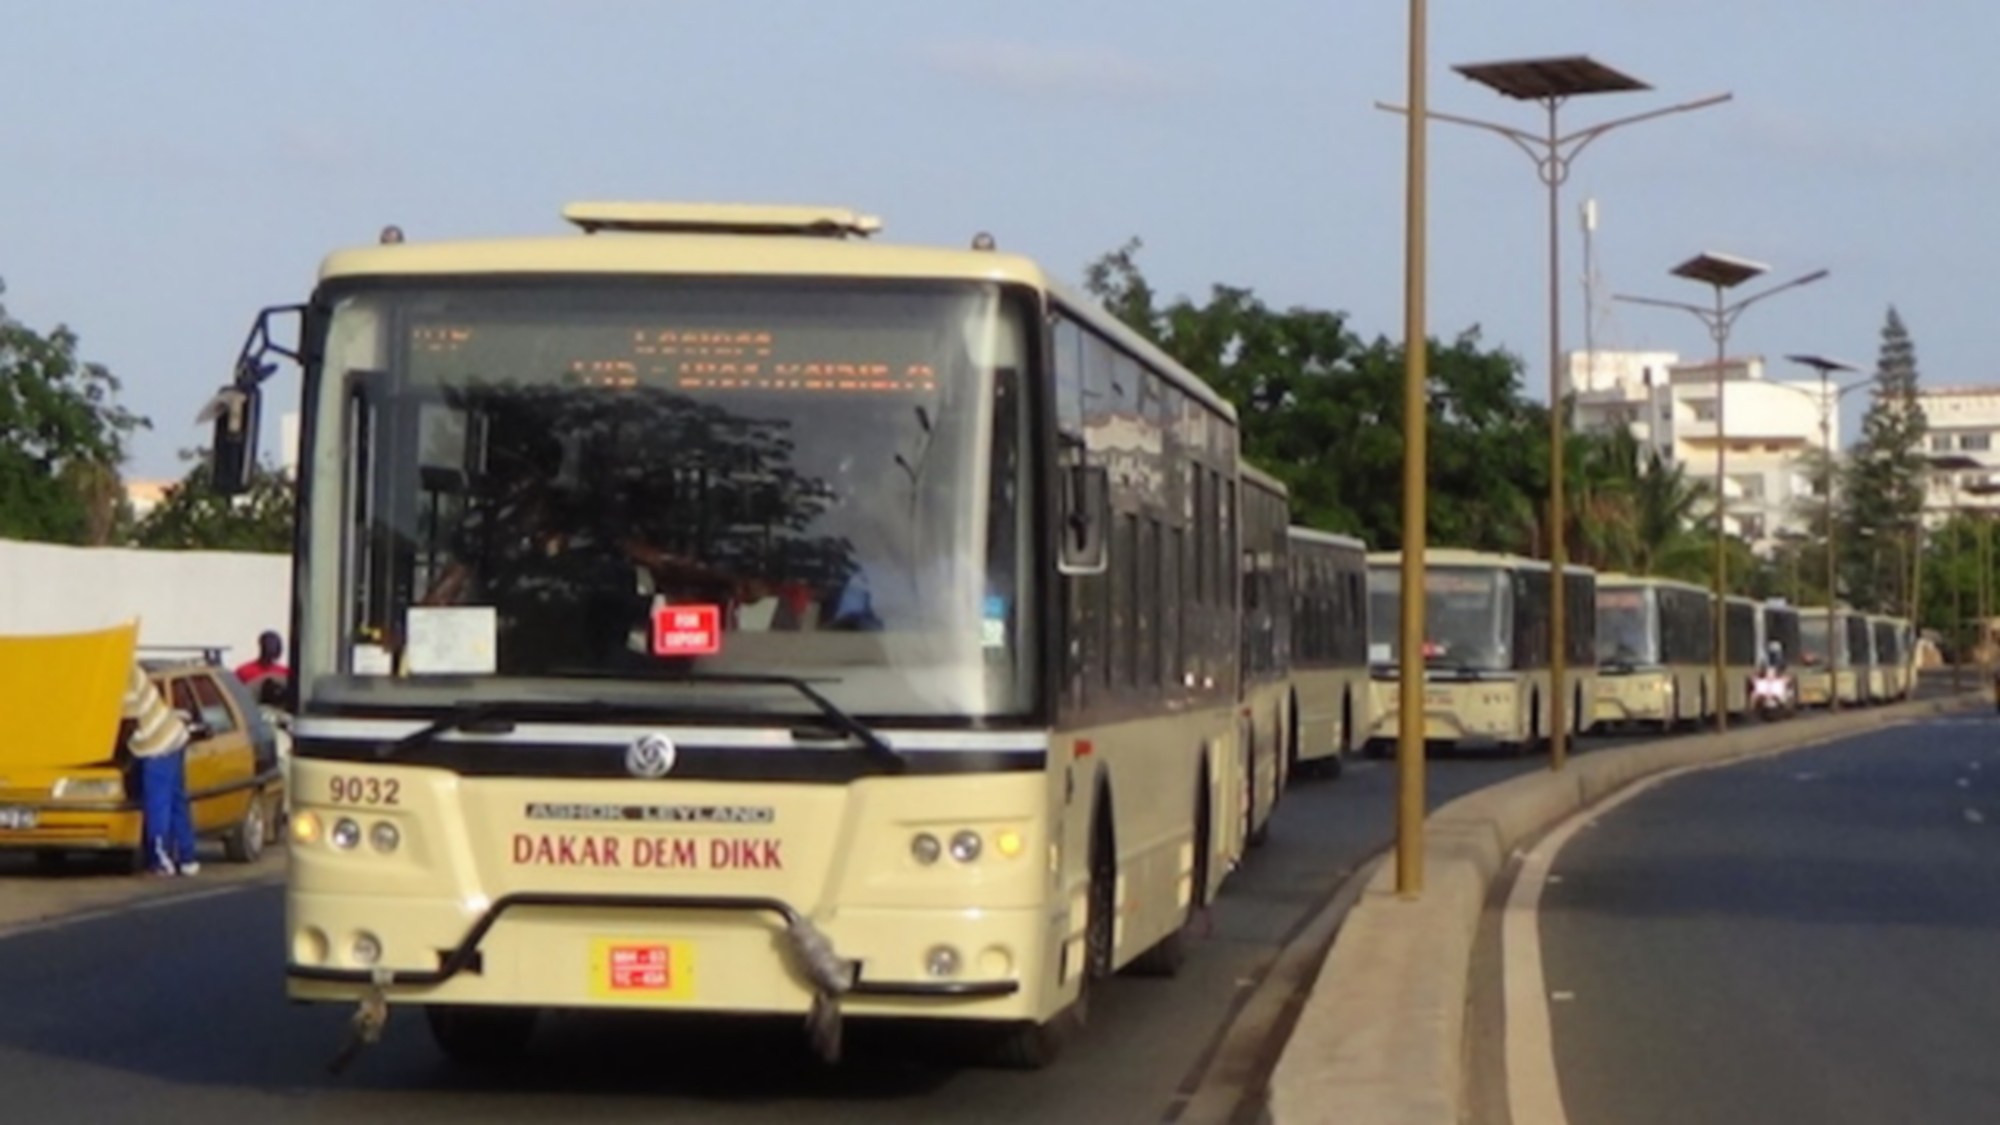 Dakar Dem Dikk prêt à arrêter tous les bus, selon le DG Moussa Diop